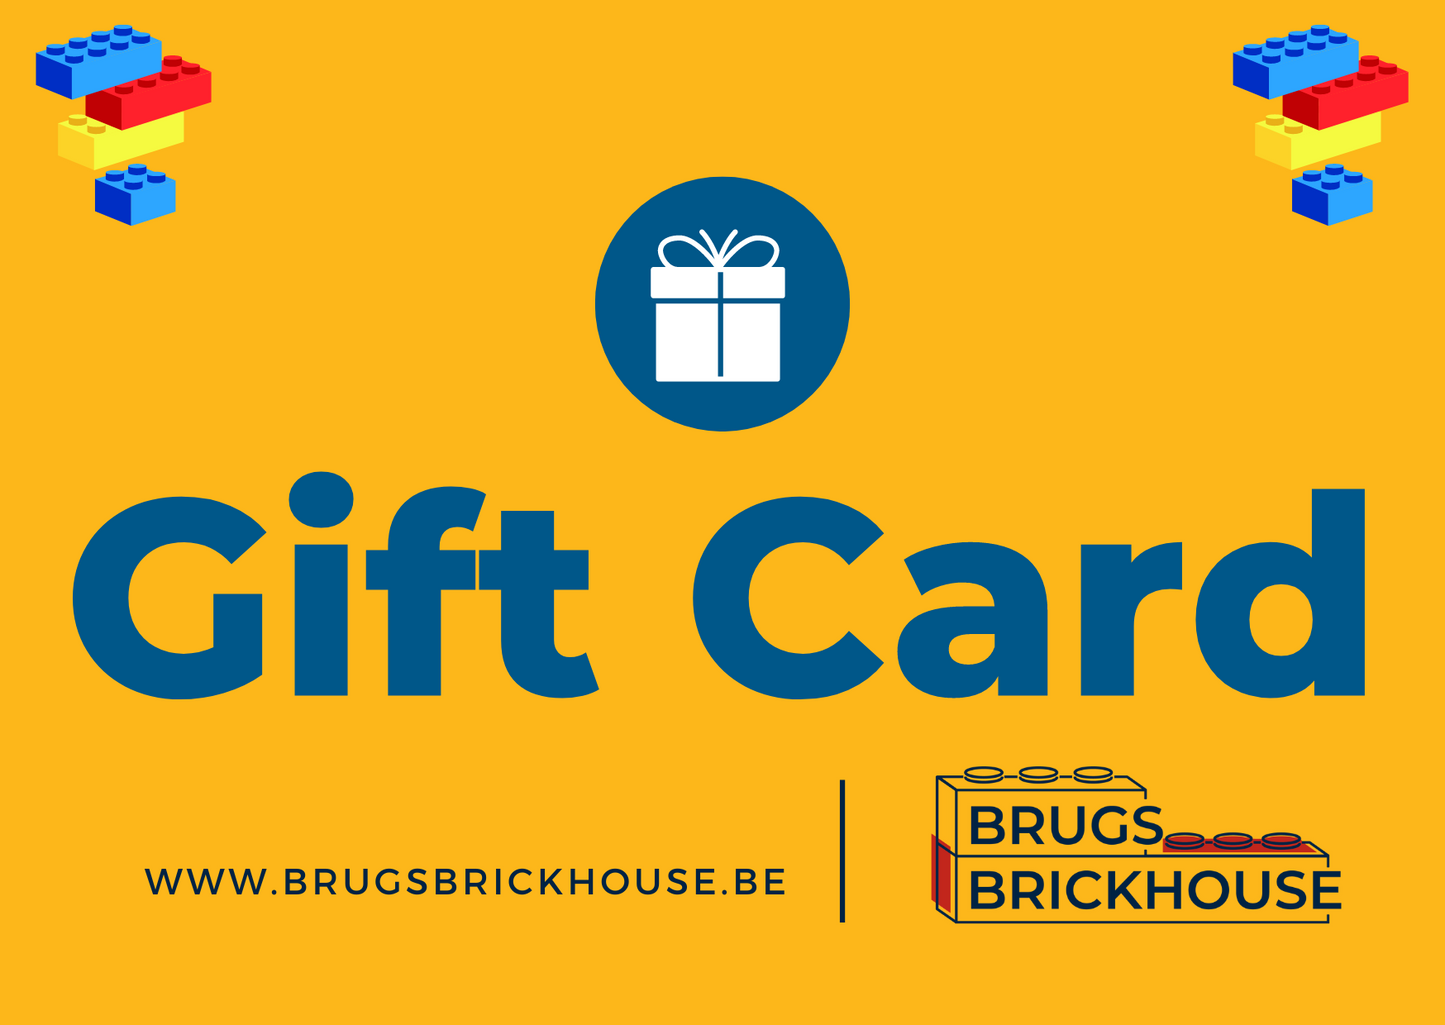 Bruges Brickhouse Gift Voucher